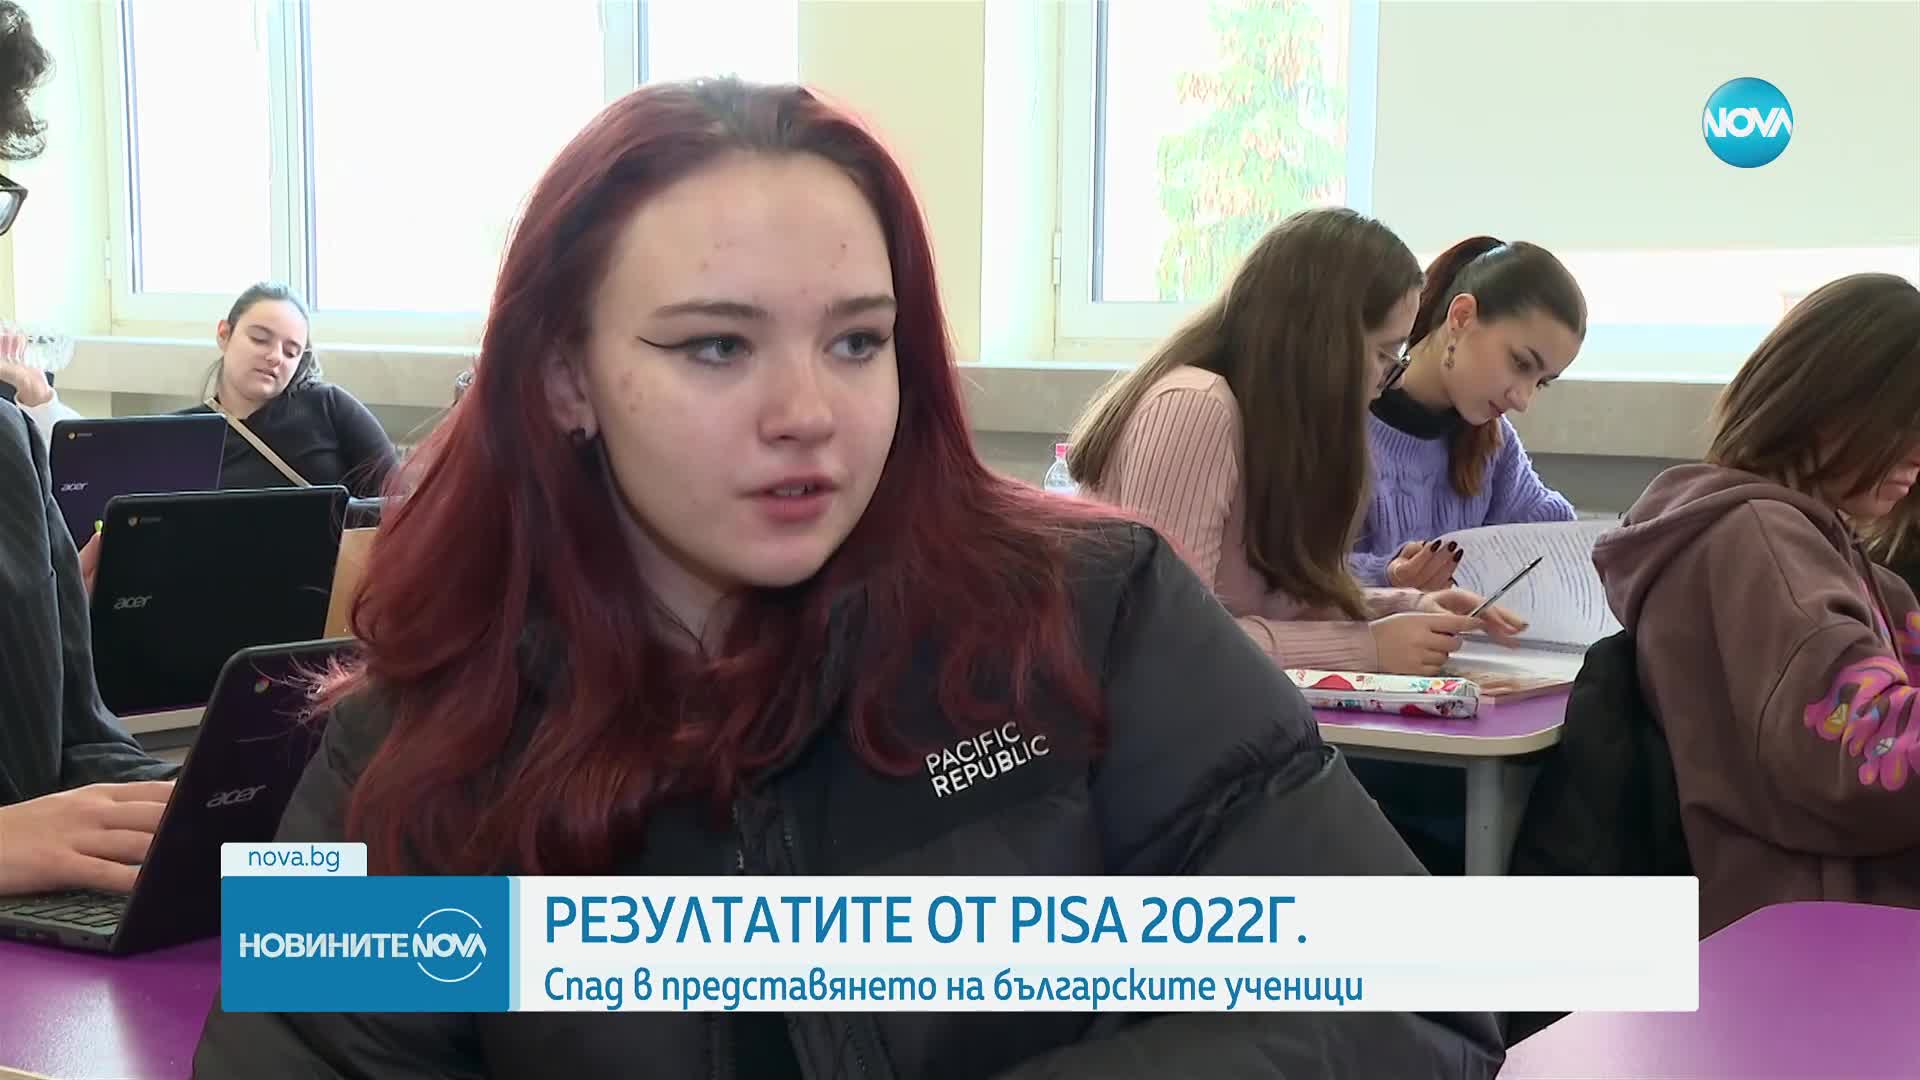 PISA: Над 50% от българските ученици нямат елементарни знания и умения по четене и математика